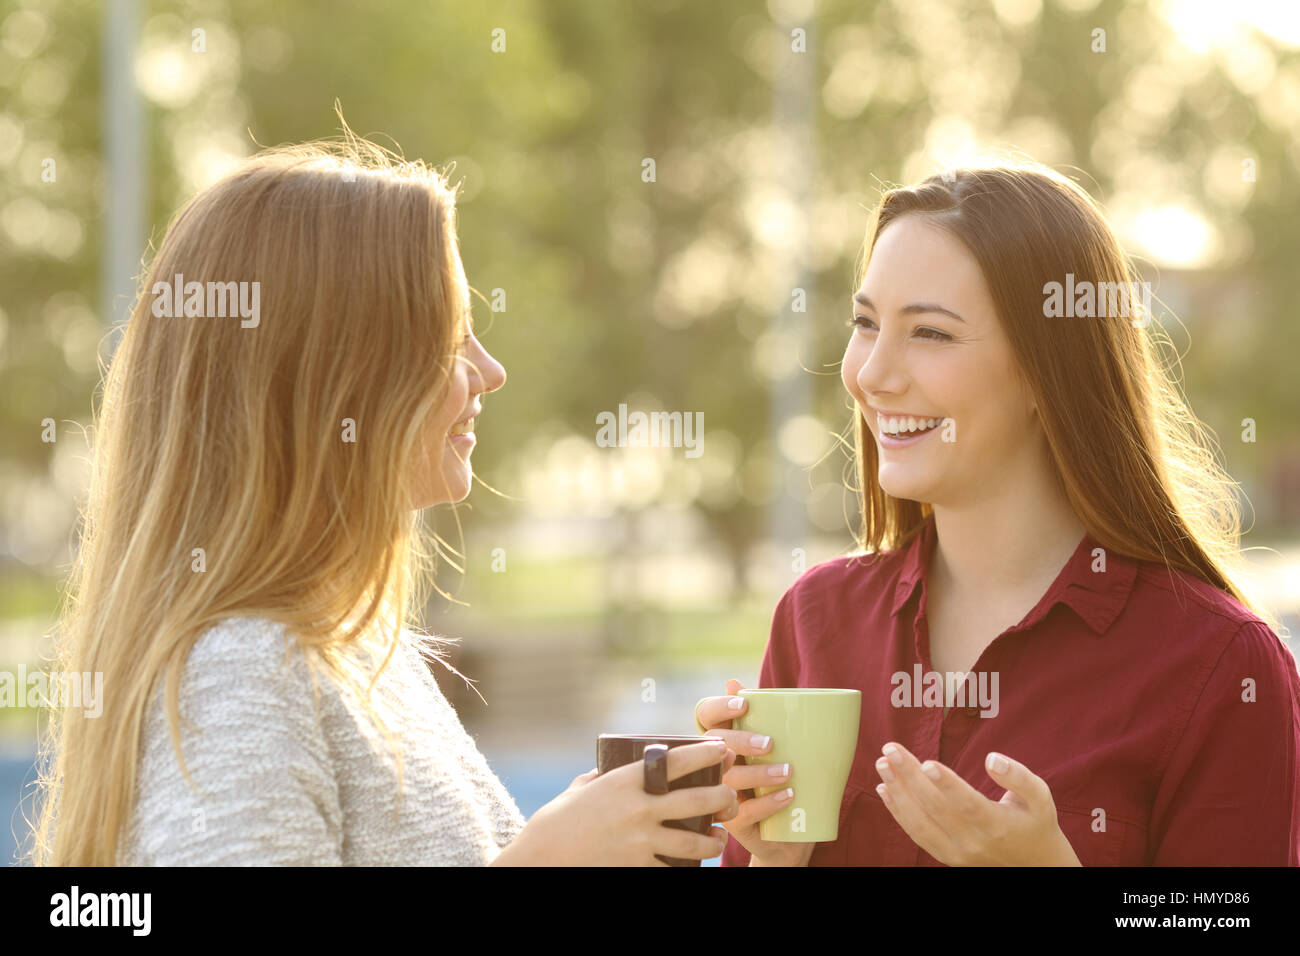 Due amici felice di parlare tenendo tazza da caffè all'aperto in un parco con uno sfondo verde al tramonto con una calda luce posteriore Foto Stock